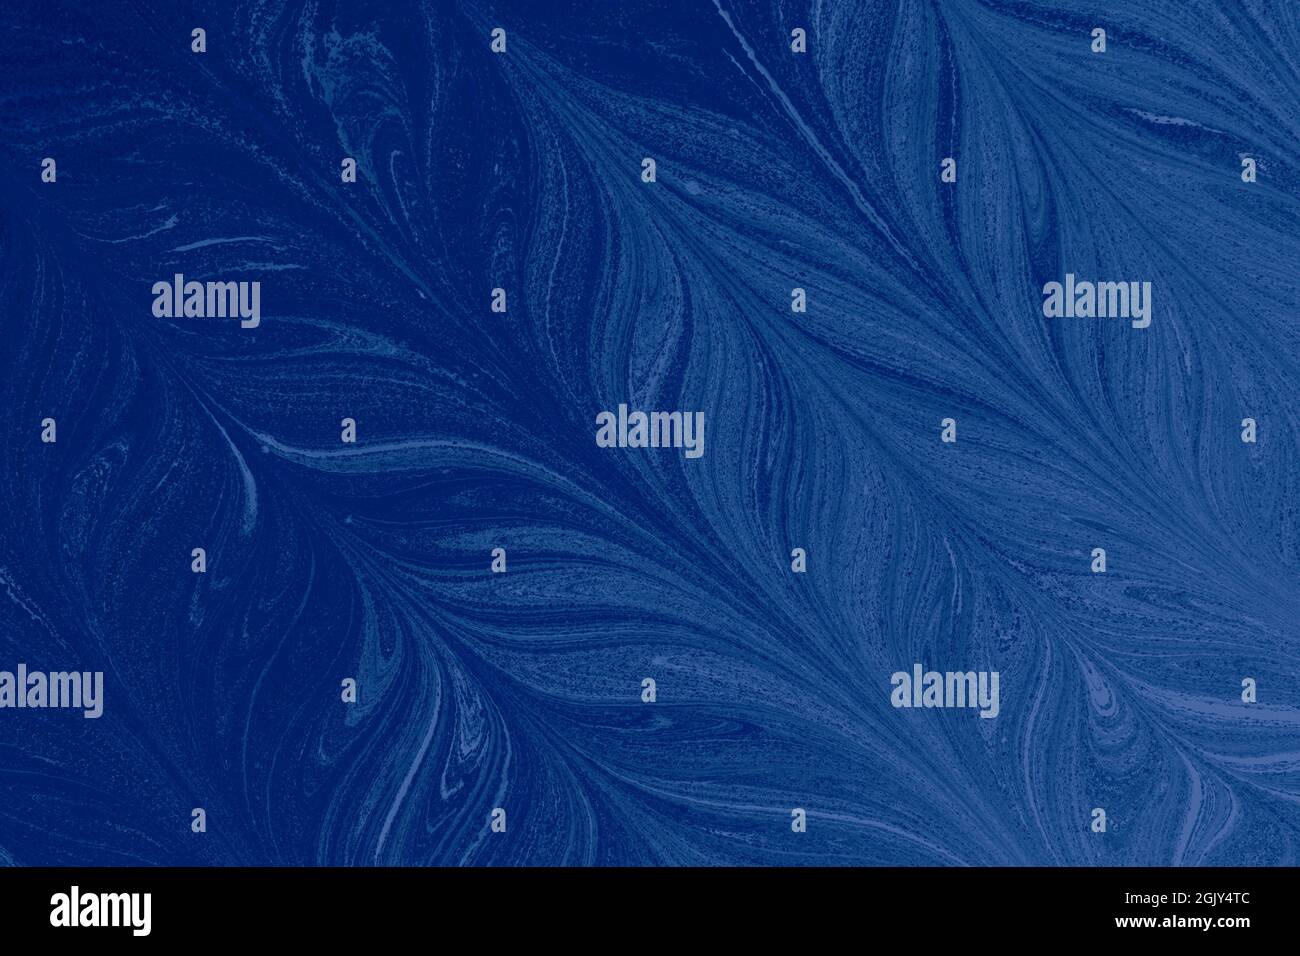 Eine abstrakte Illustration der federförmigen öligen blauen Malerei Stockfoto